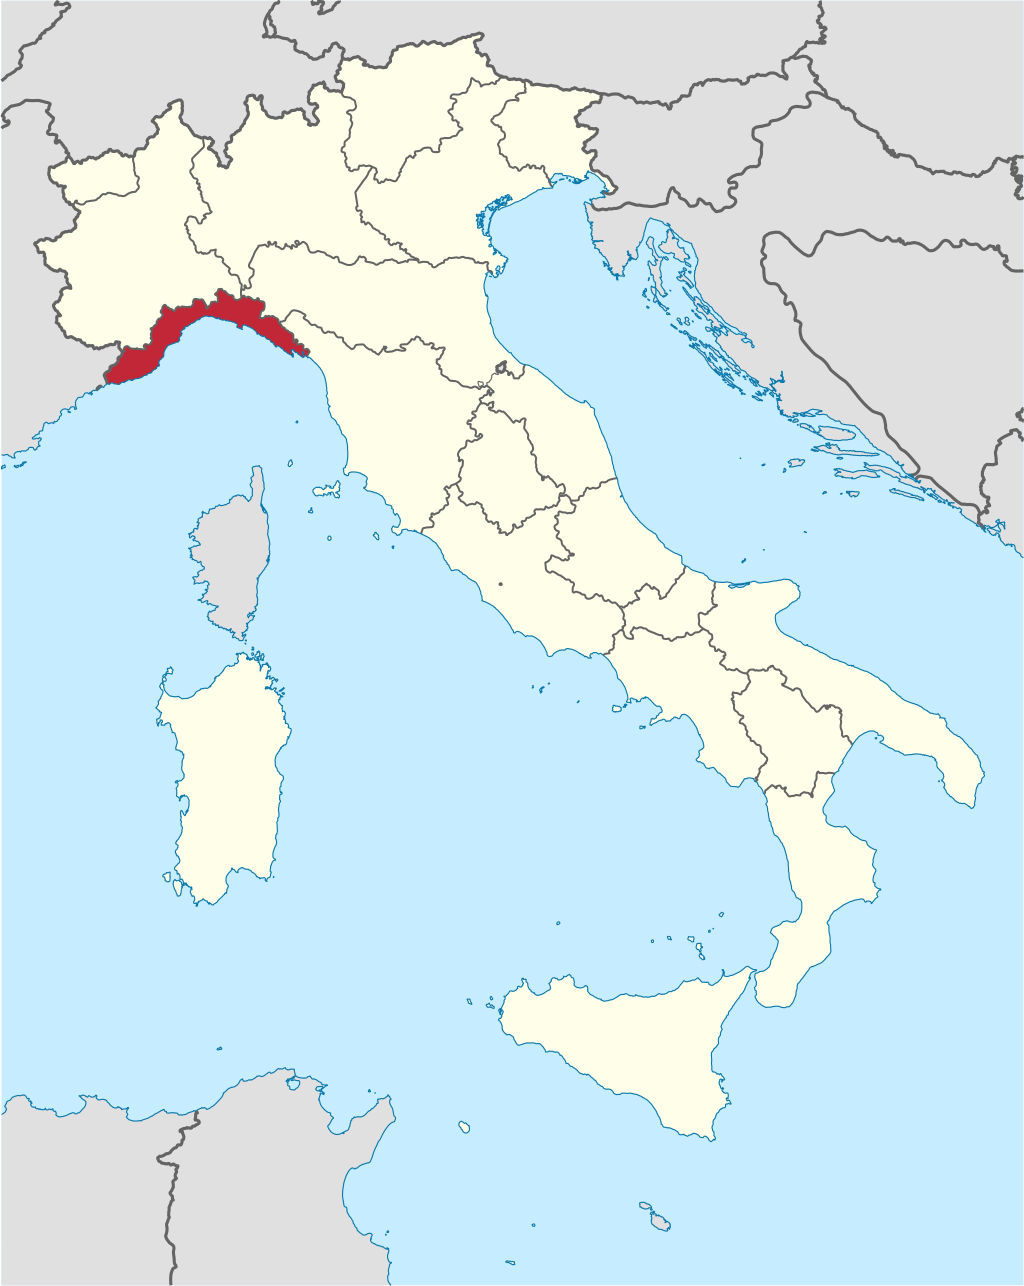 Bordoni Palace Urbex location or around the region Liguria (Savona), Italy